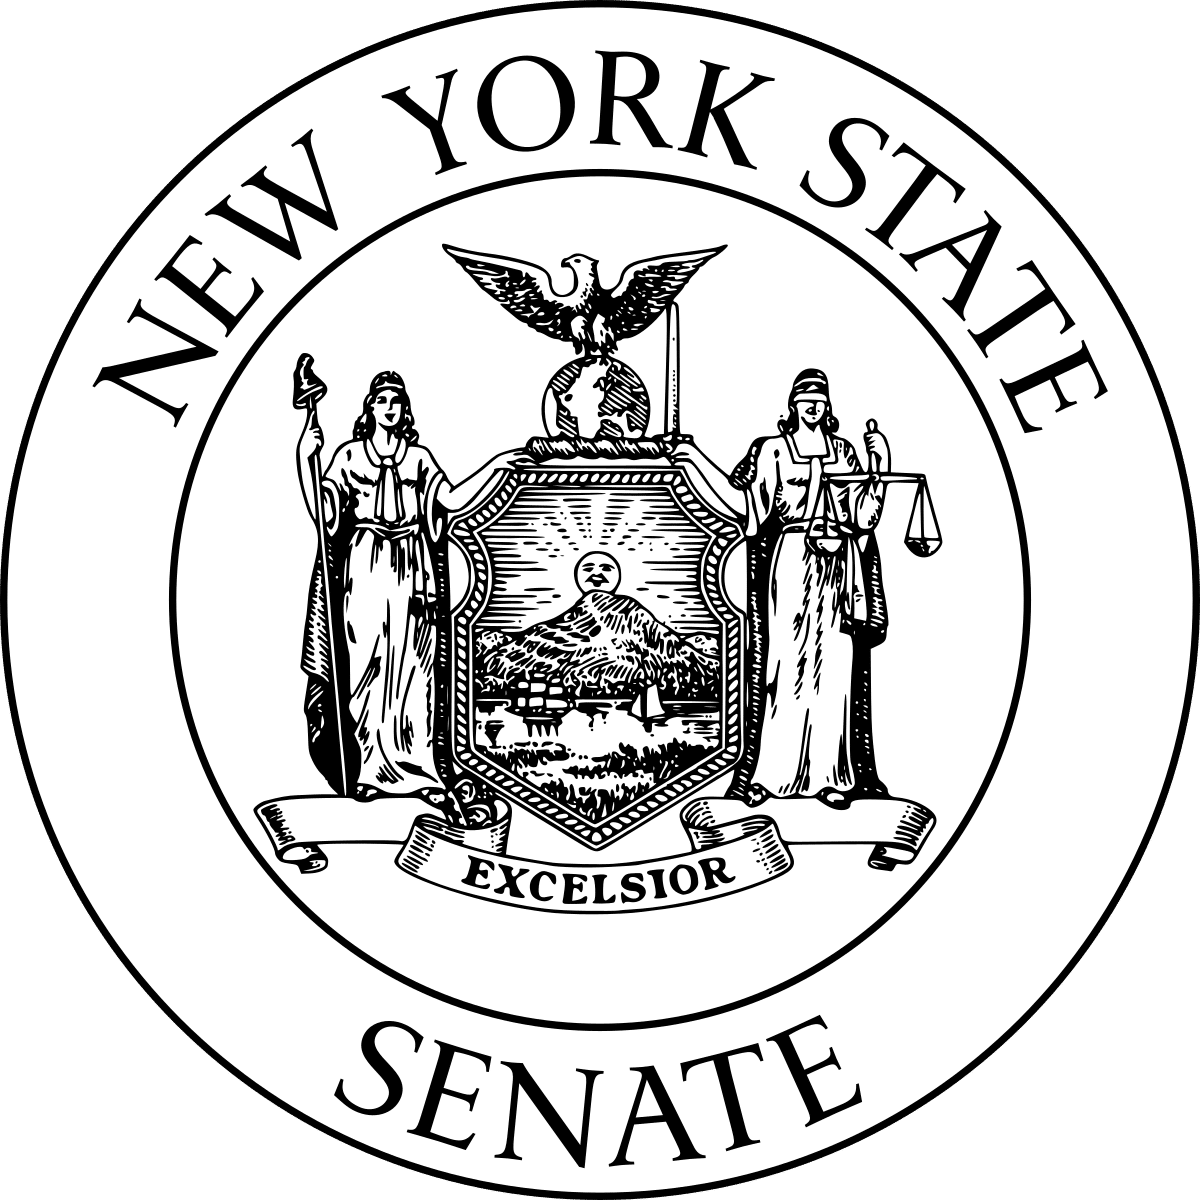 New York State Senate